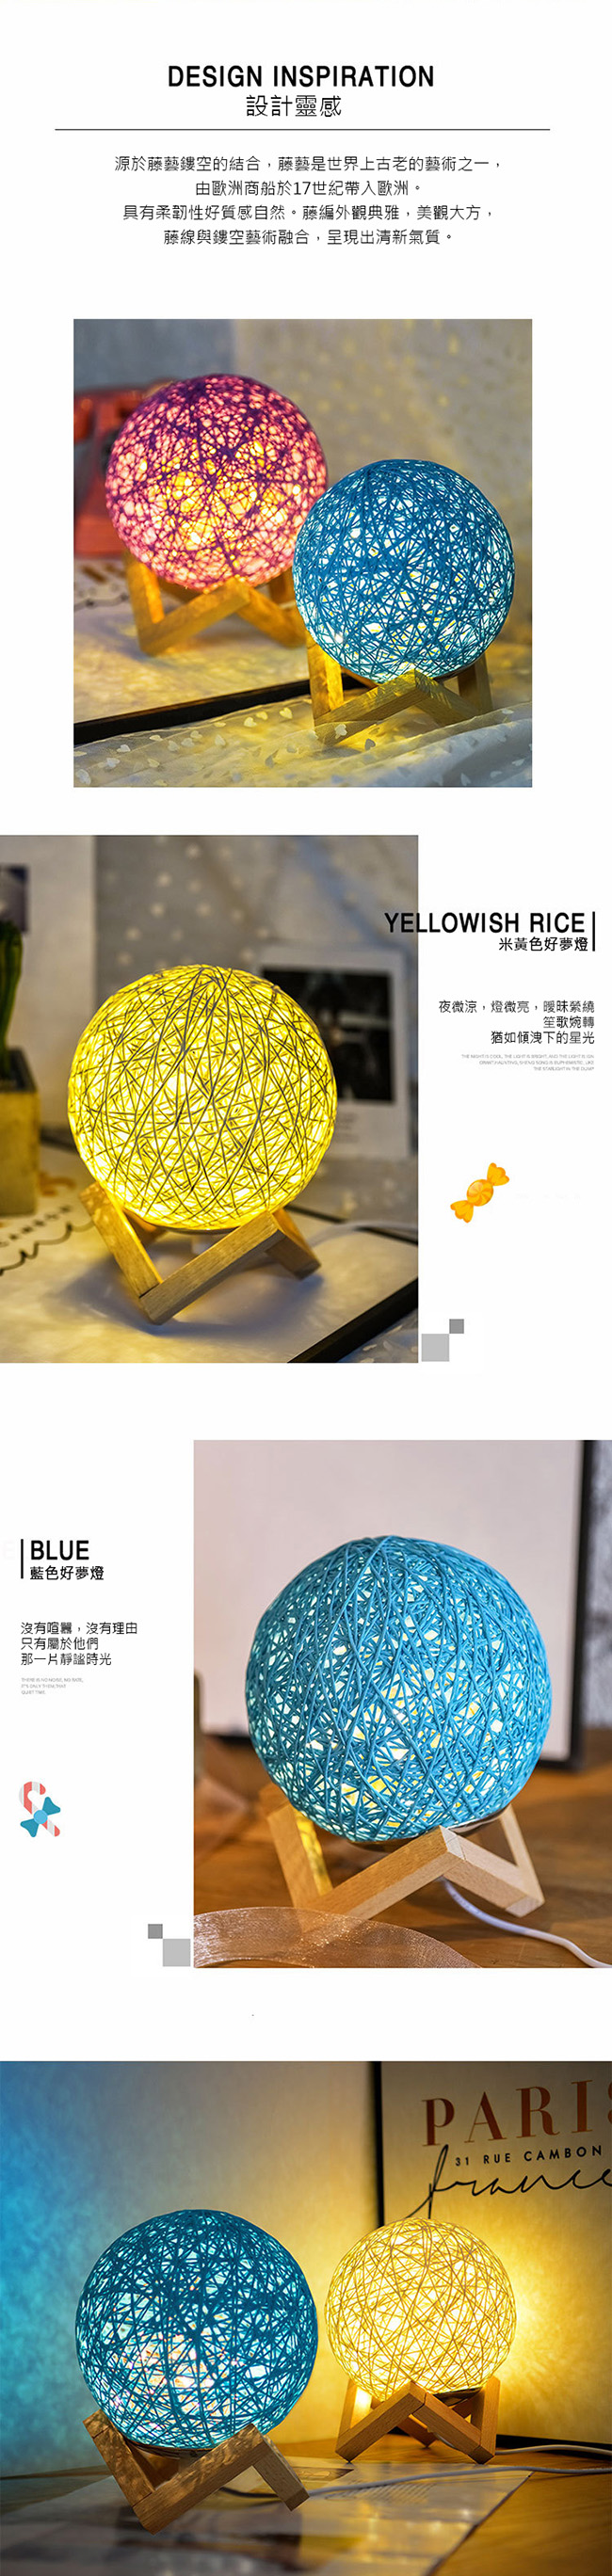 USB藤球裝飾燈/LED小夜燈